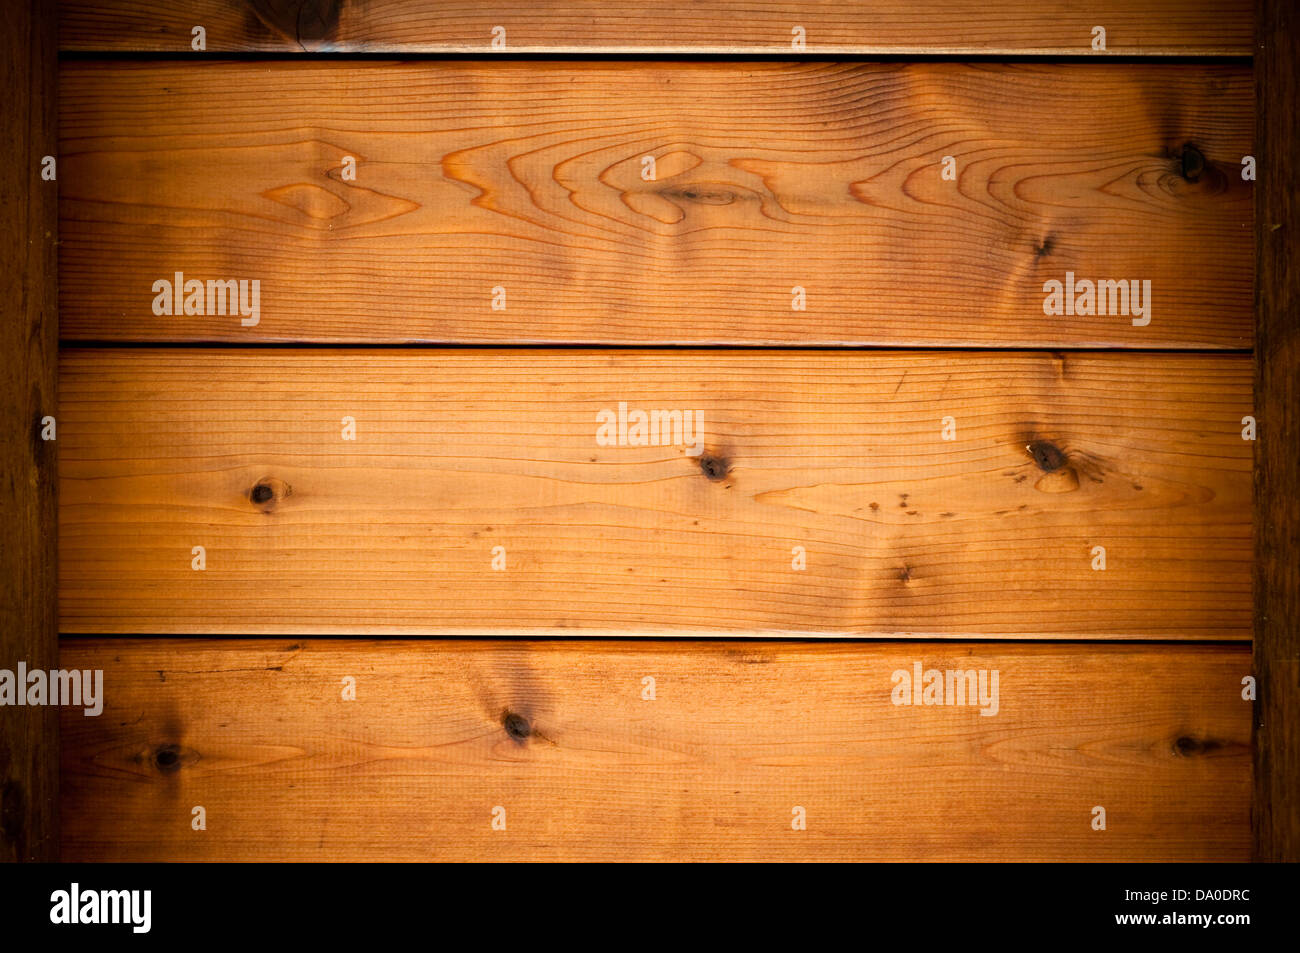 Tablones de cedro fotografías e imágenes de alta resolución - Alamy